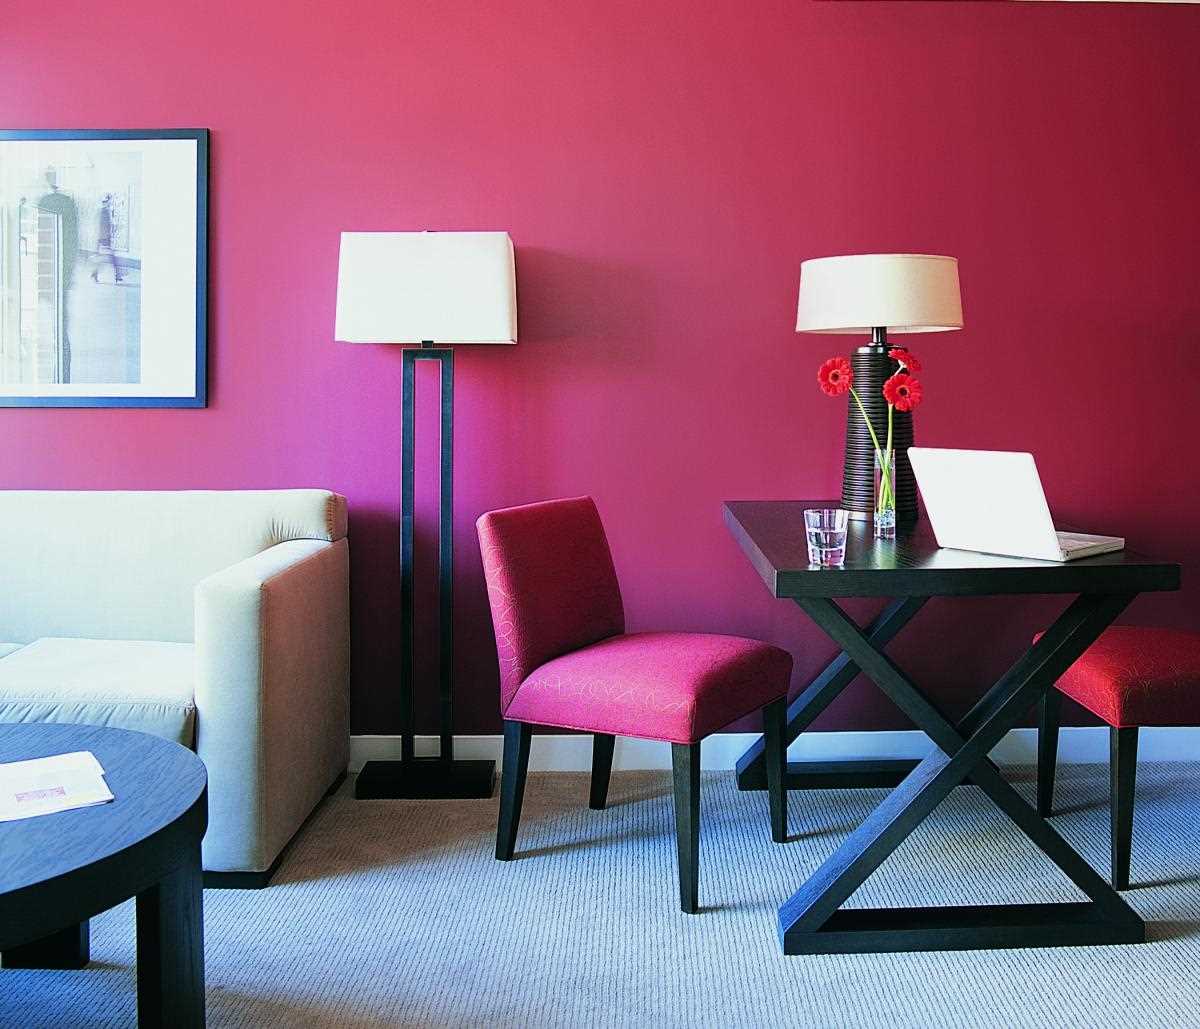 příklad použití růžové ve světlém interiéru bytu